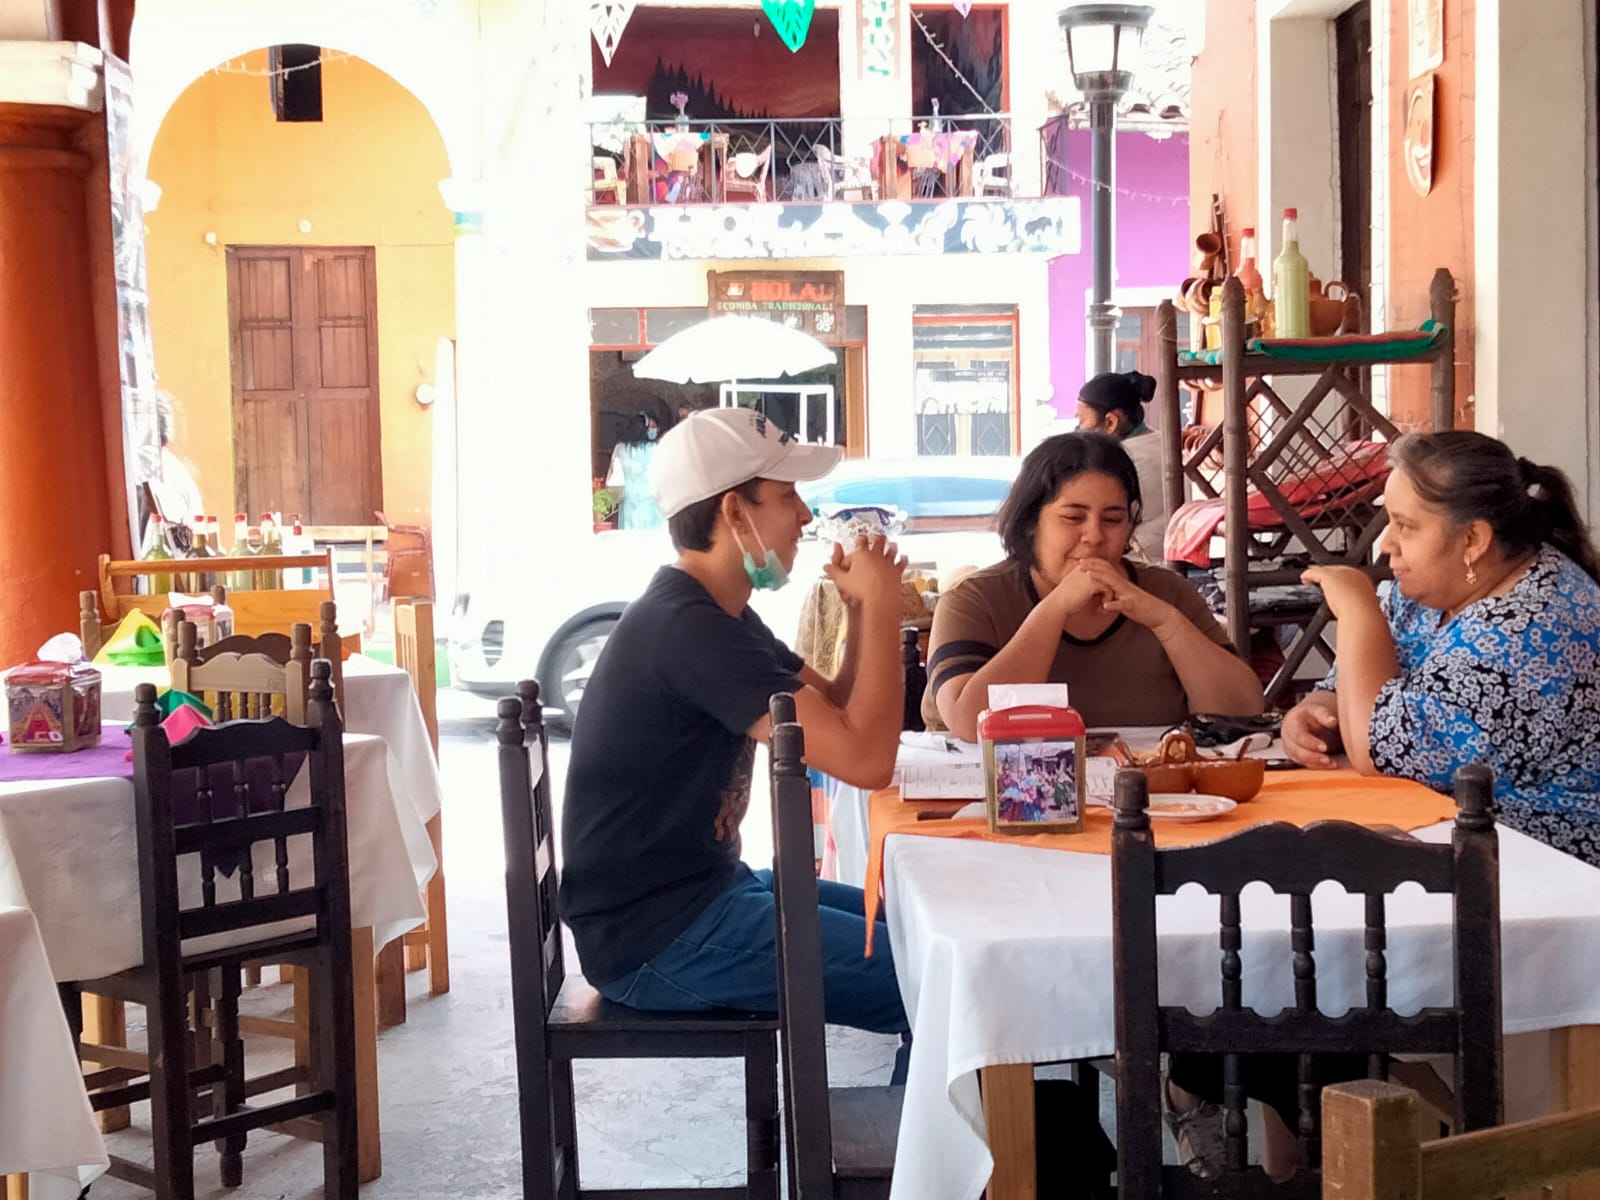 Prevén 20 % de repunte en restaurantes de Veracruz-Boca: Canirac